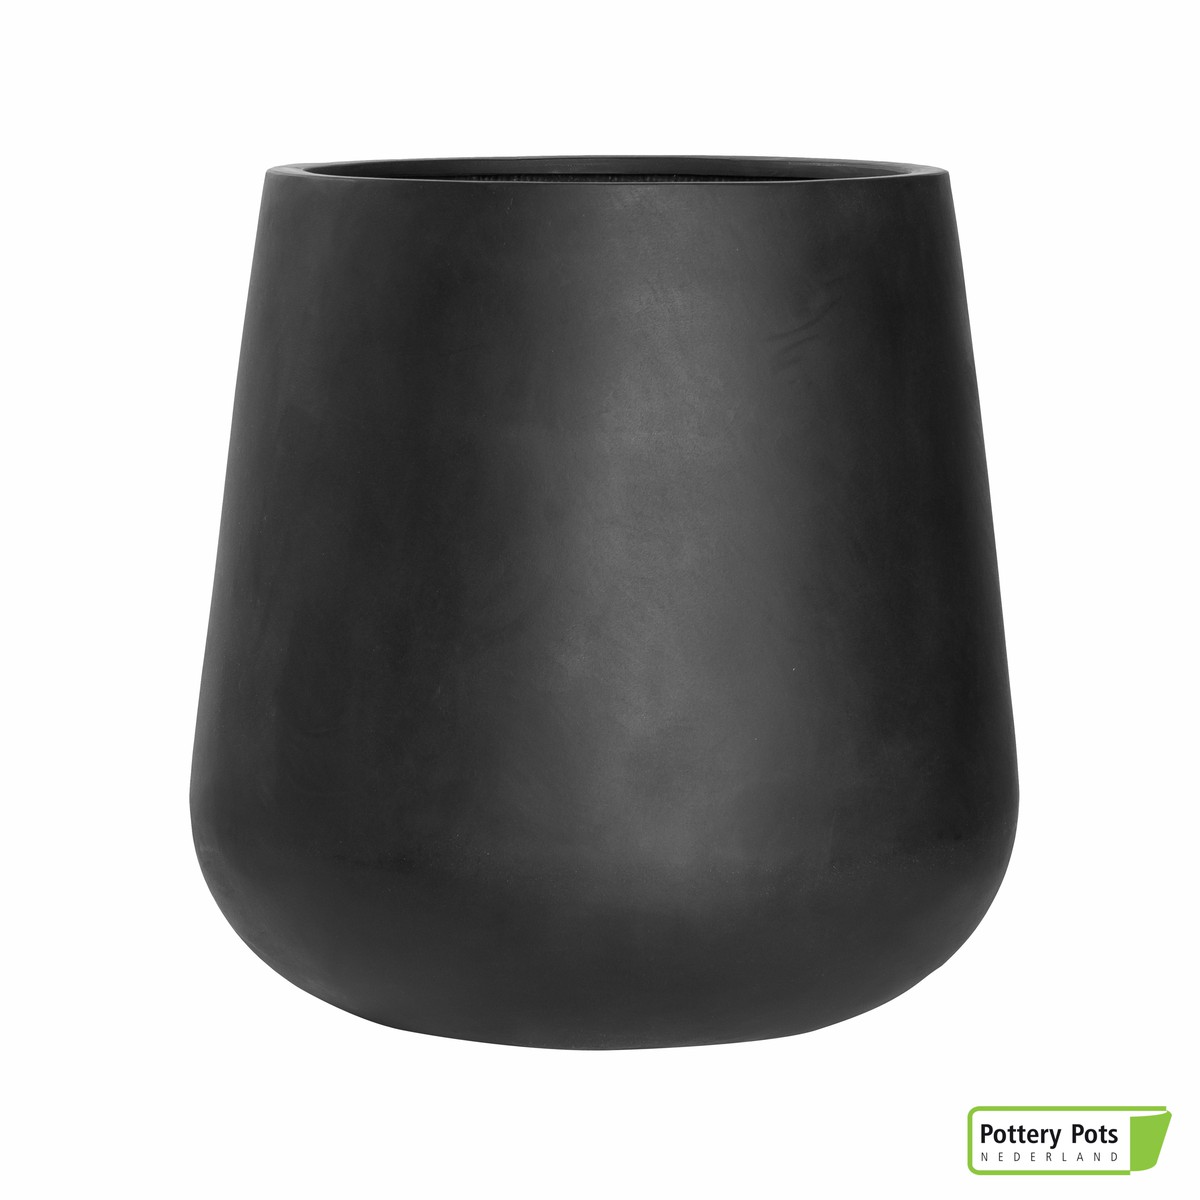 Potterypot
Potterypot
Pottery Pots  Pax pot rond haut black Grand Noir Diam66x67cm